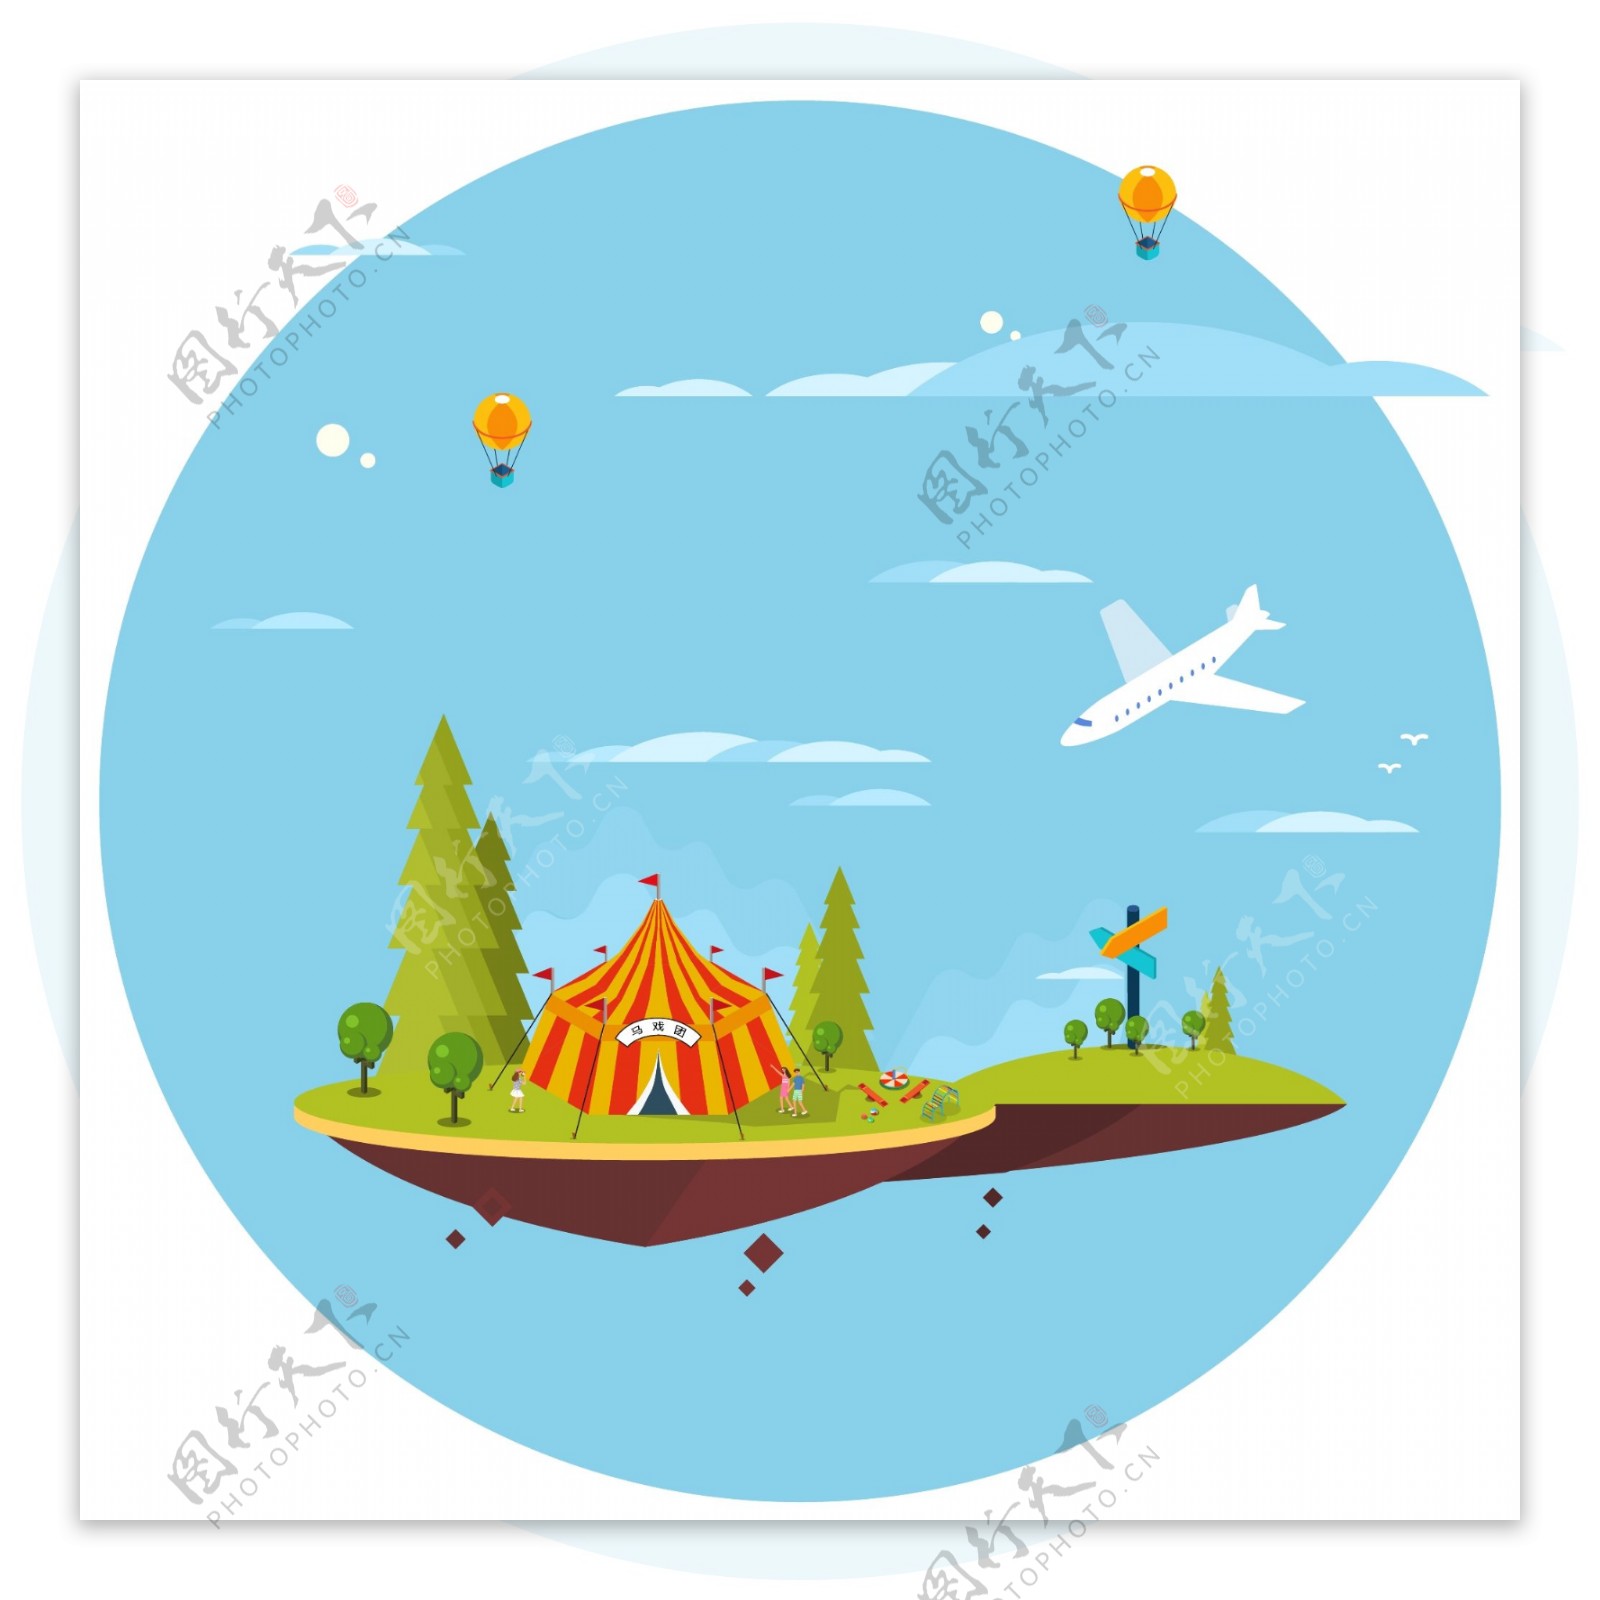 悬浮的马戏团小岛2.5d插图